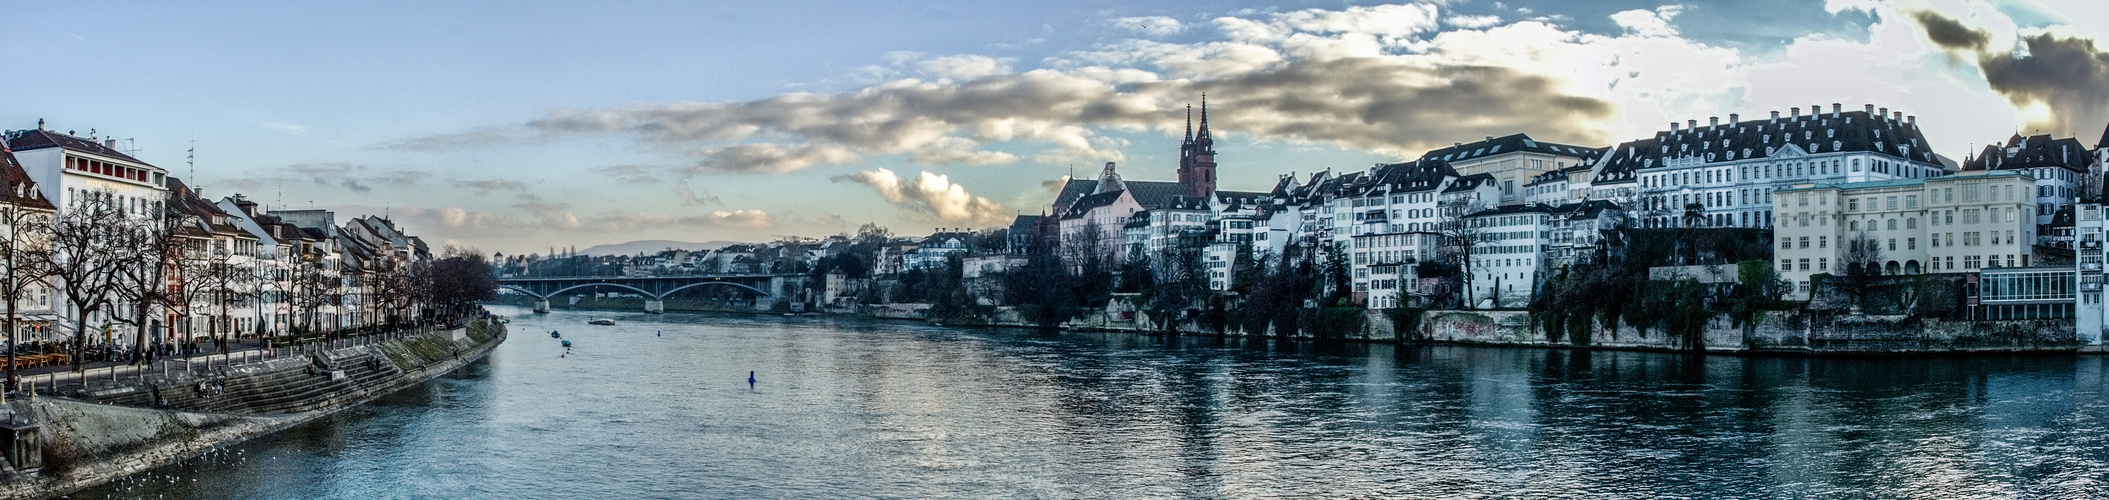 Sicht auf Rhein und Stadt